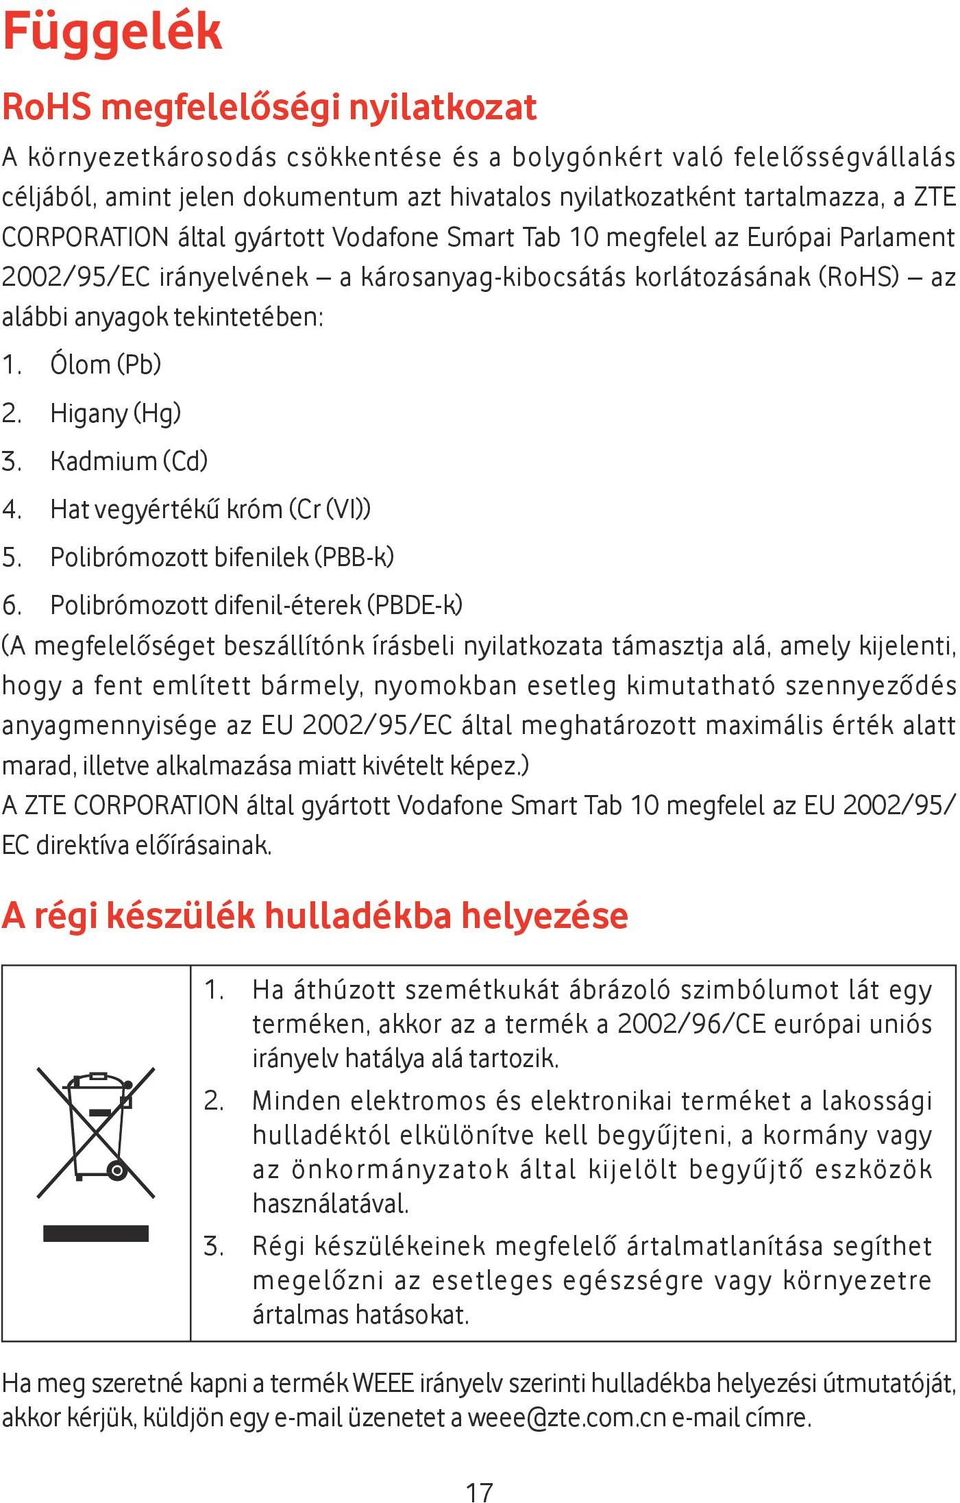 Higany (Hg) 3. Kadmium (Cd) 4. Hat vegyértékű króm (Cr (VI)) 5. Polibrómozott bifenilek (PBB-k) 6.